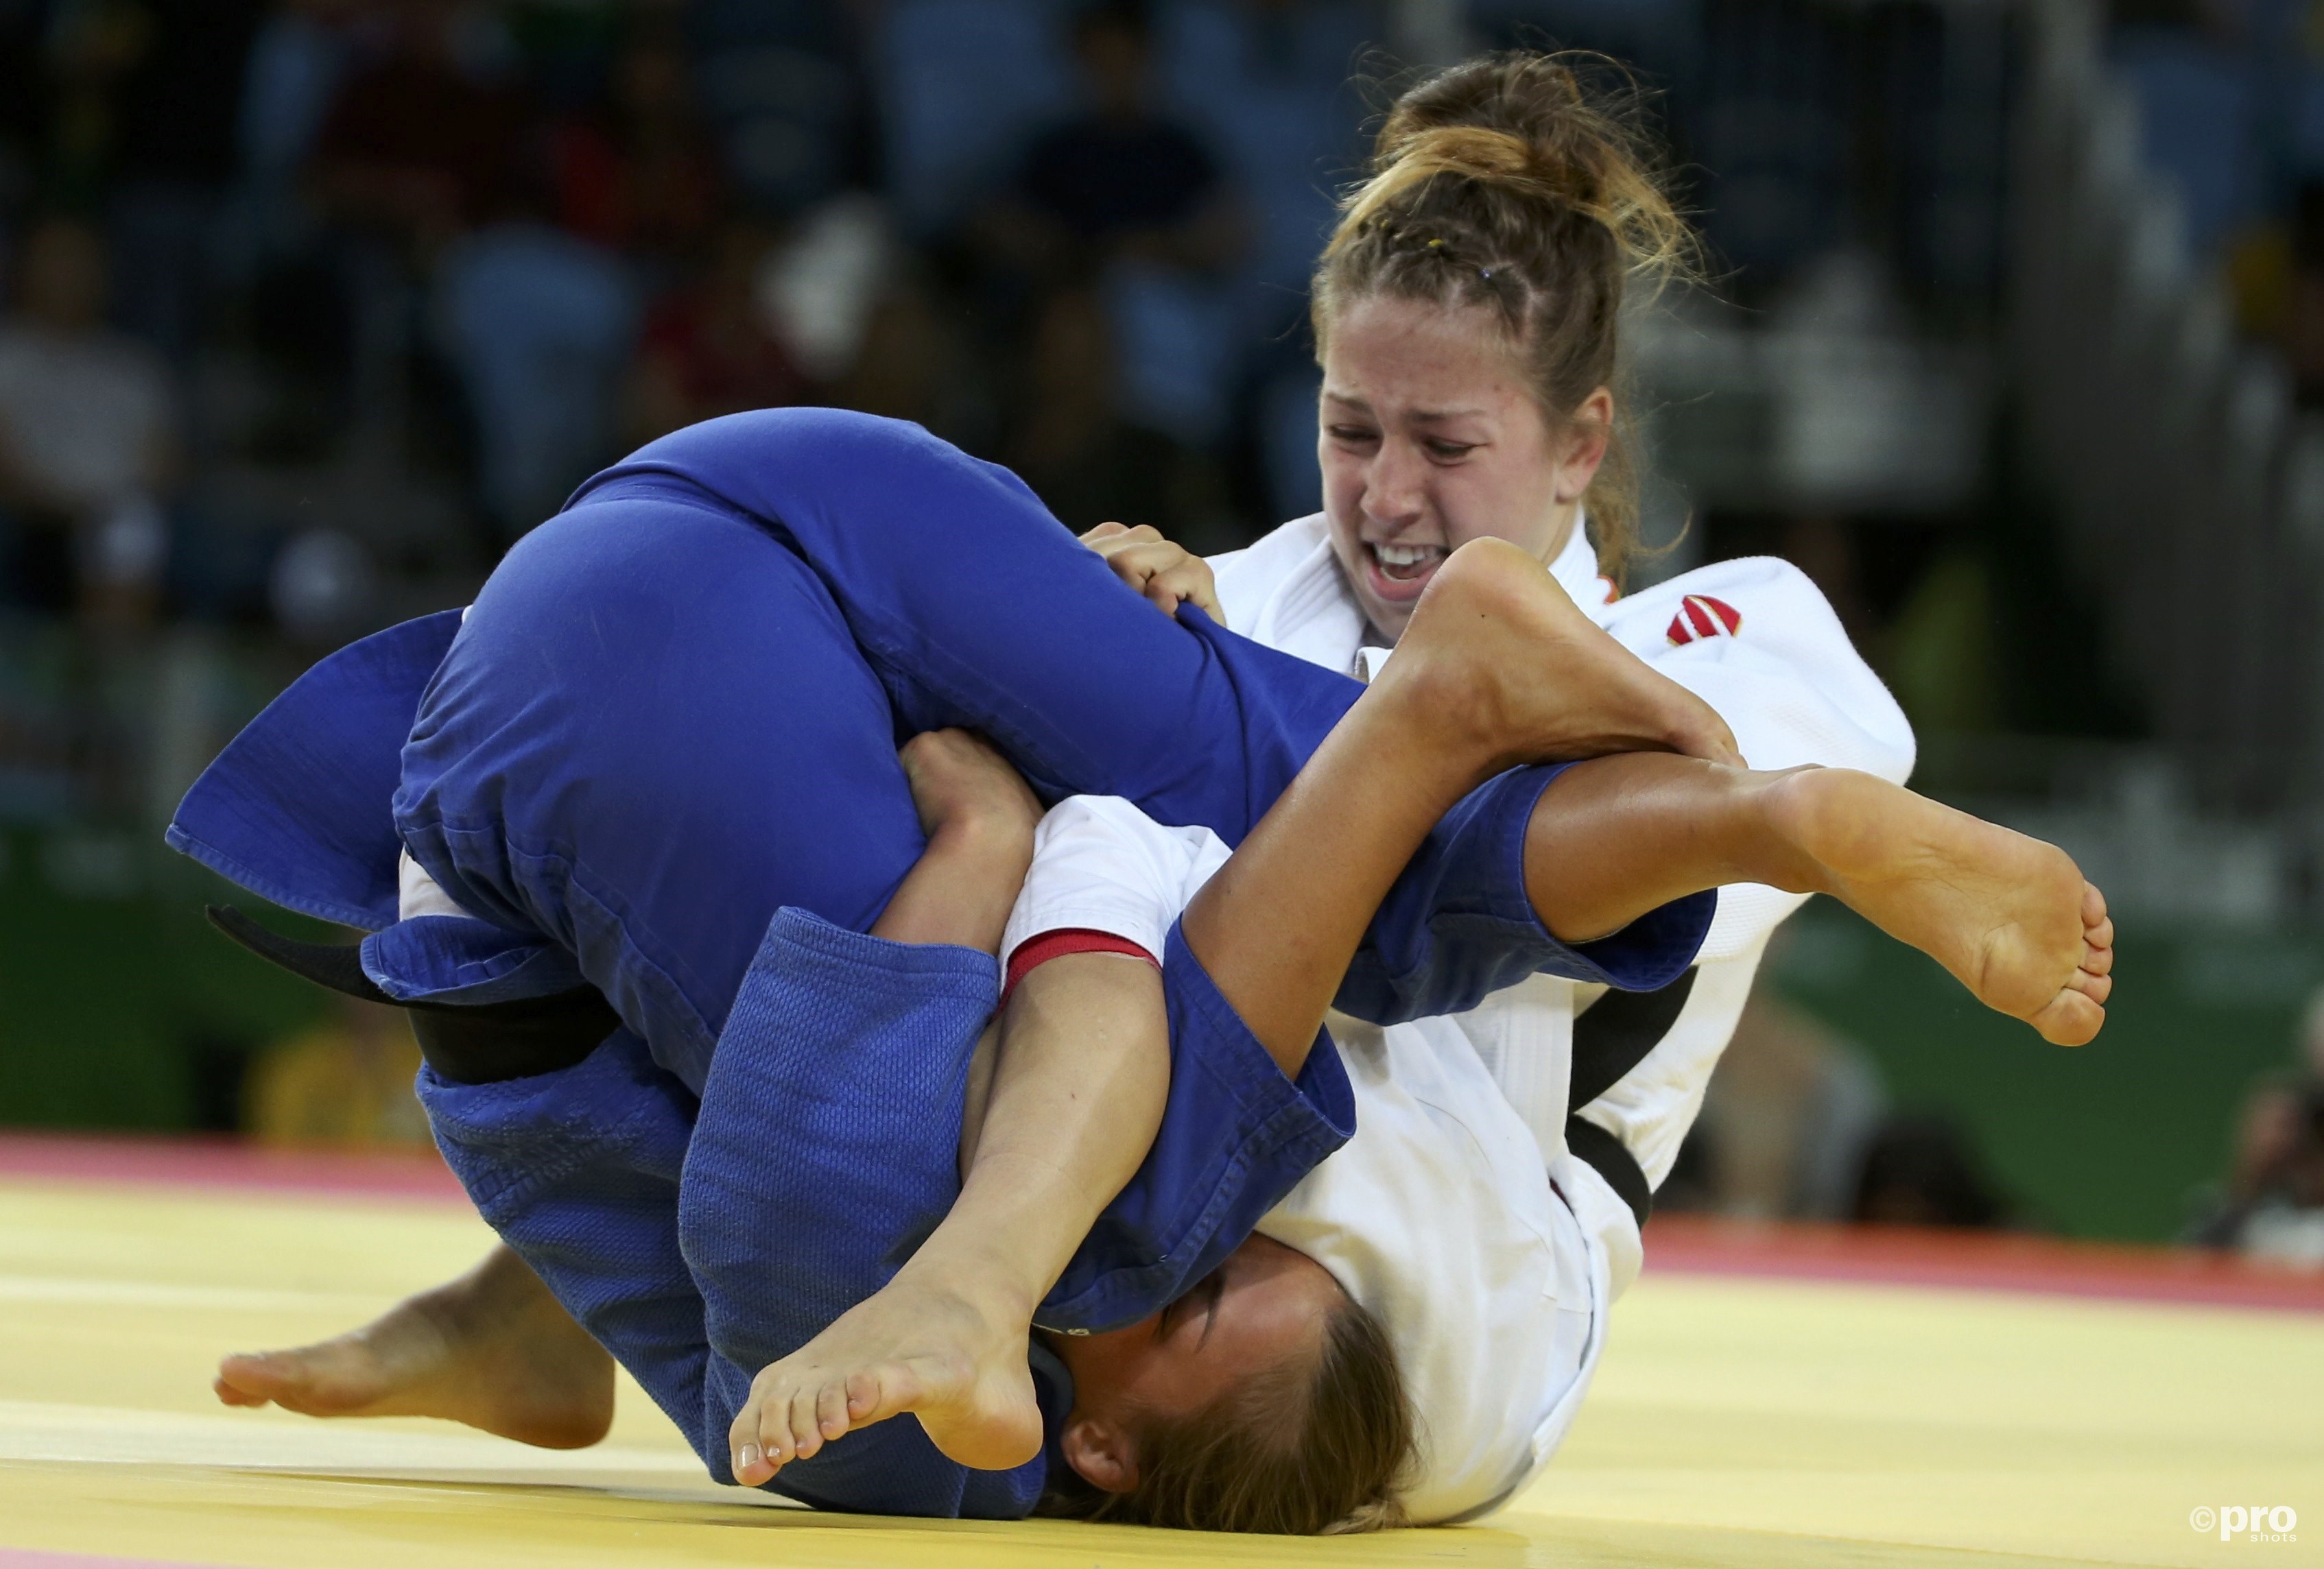 Catherine Beauchemin-Pinard en Hedvig Karakas laten zien dat judo heel intiem kan zijn (Pro Shots / Action Images)